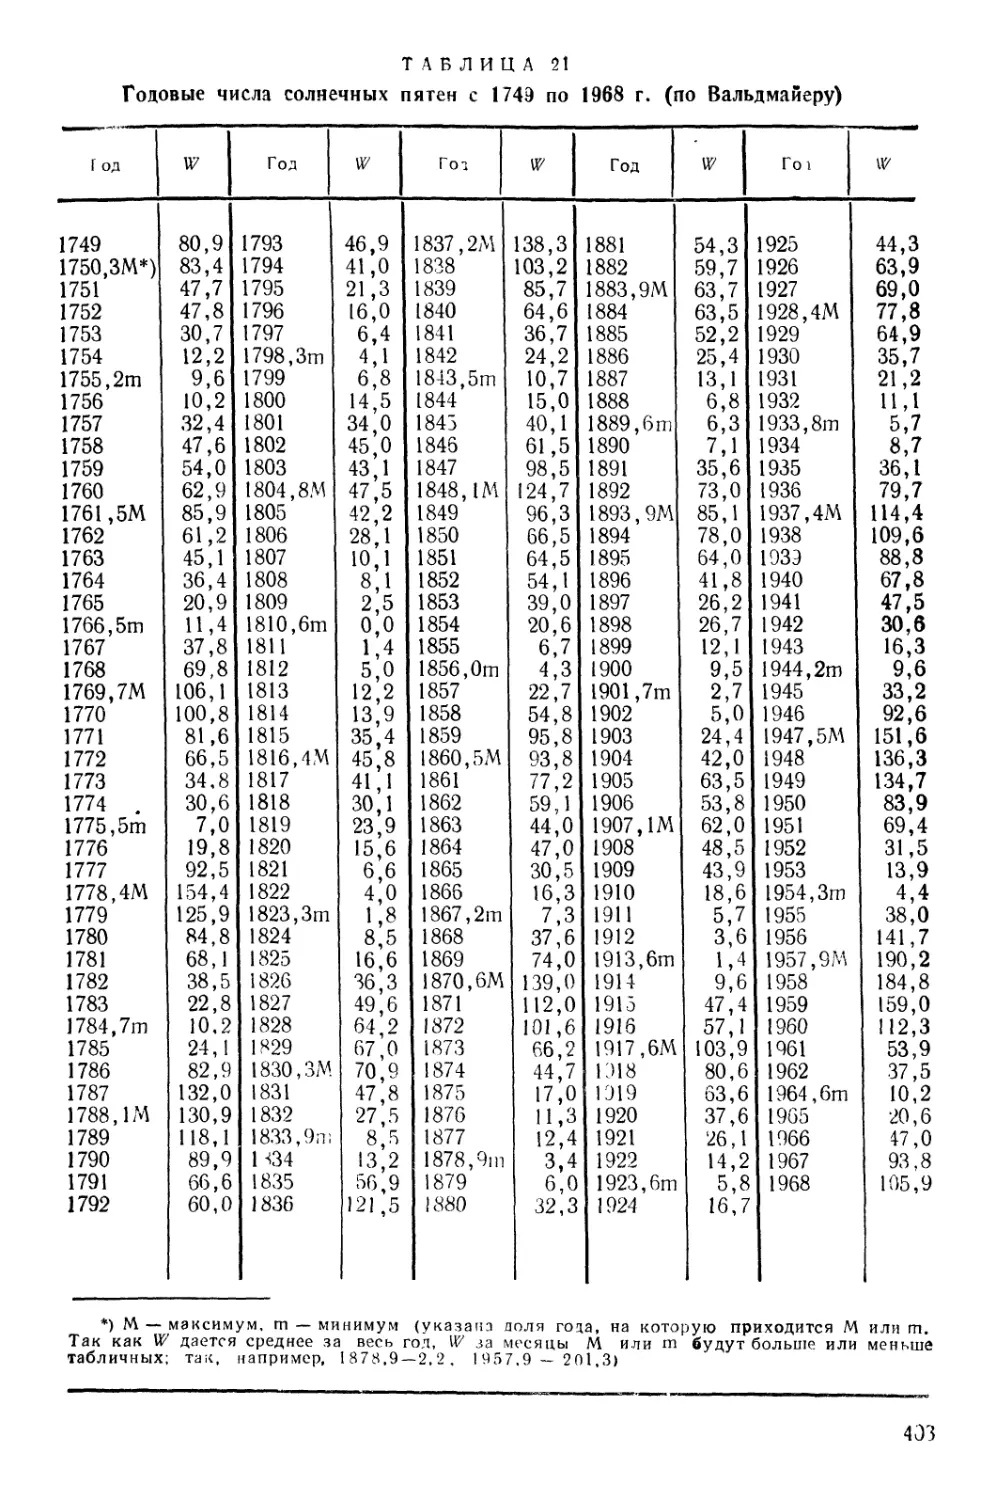 21. Годовые числа солнечных пятен с 1749 по 1968 г